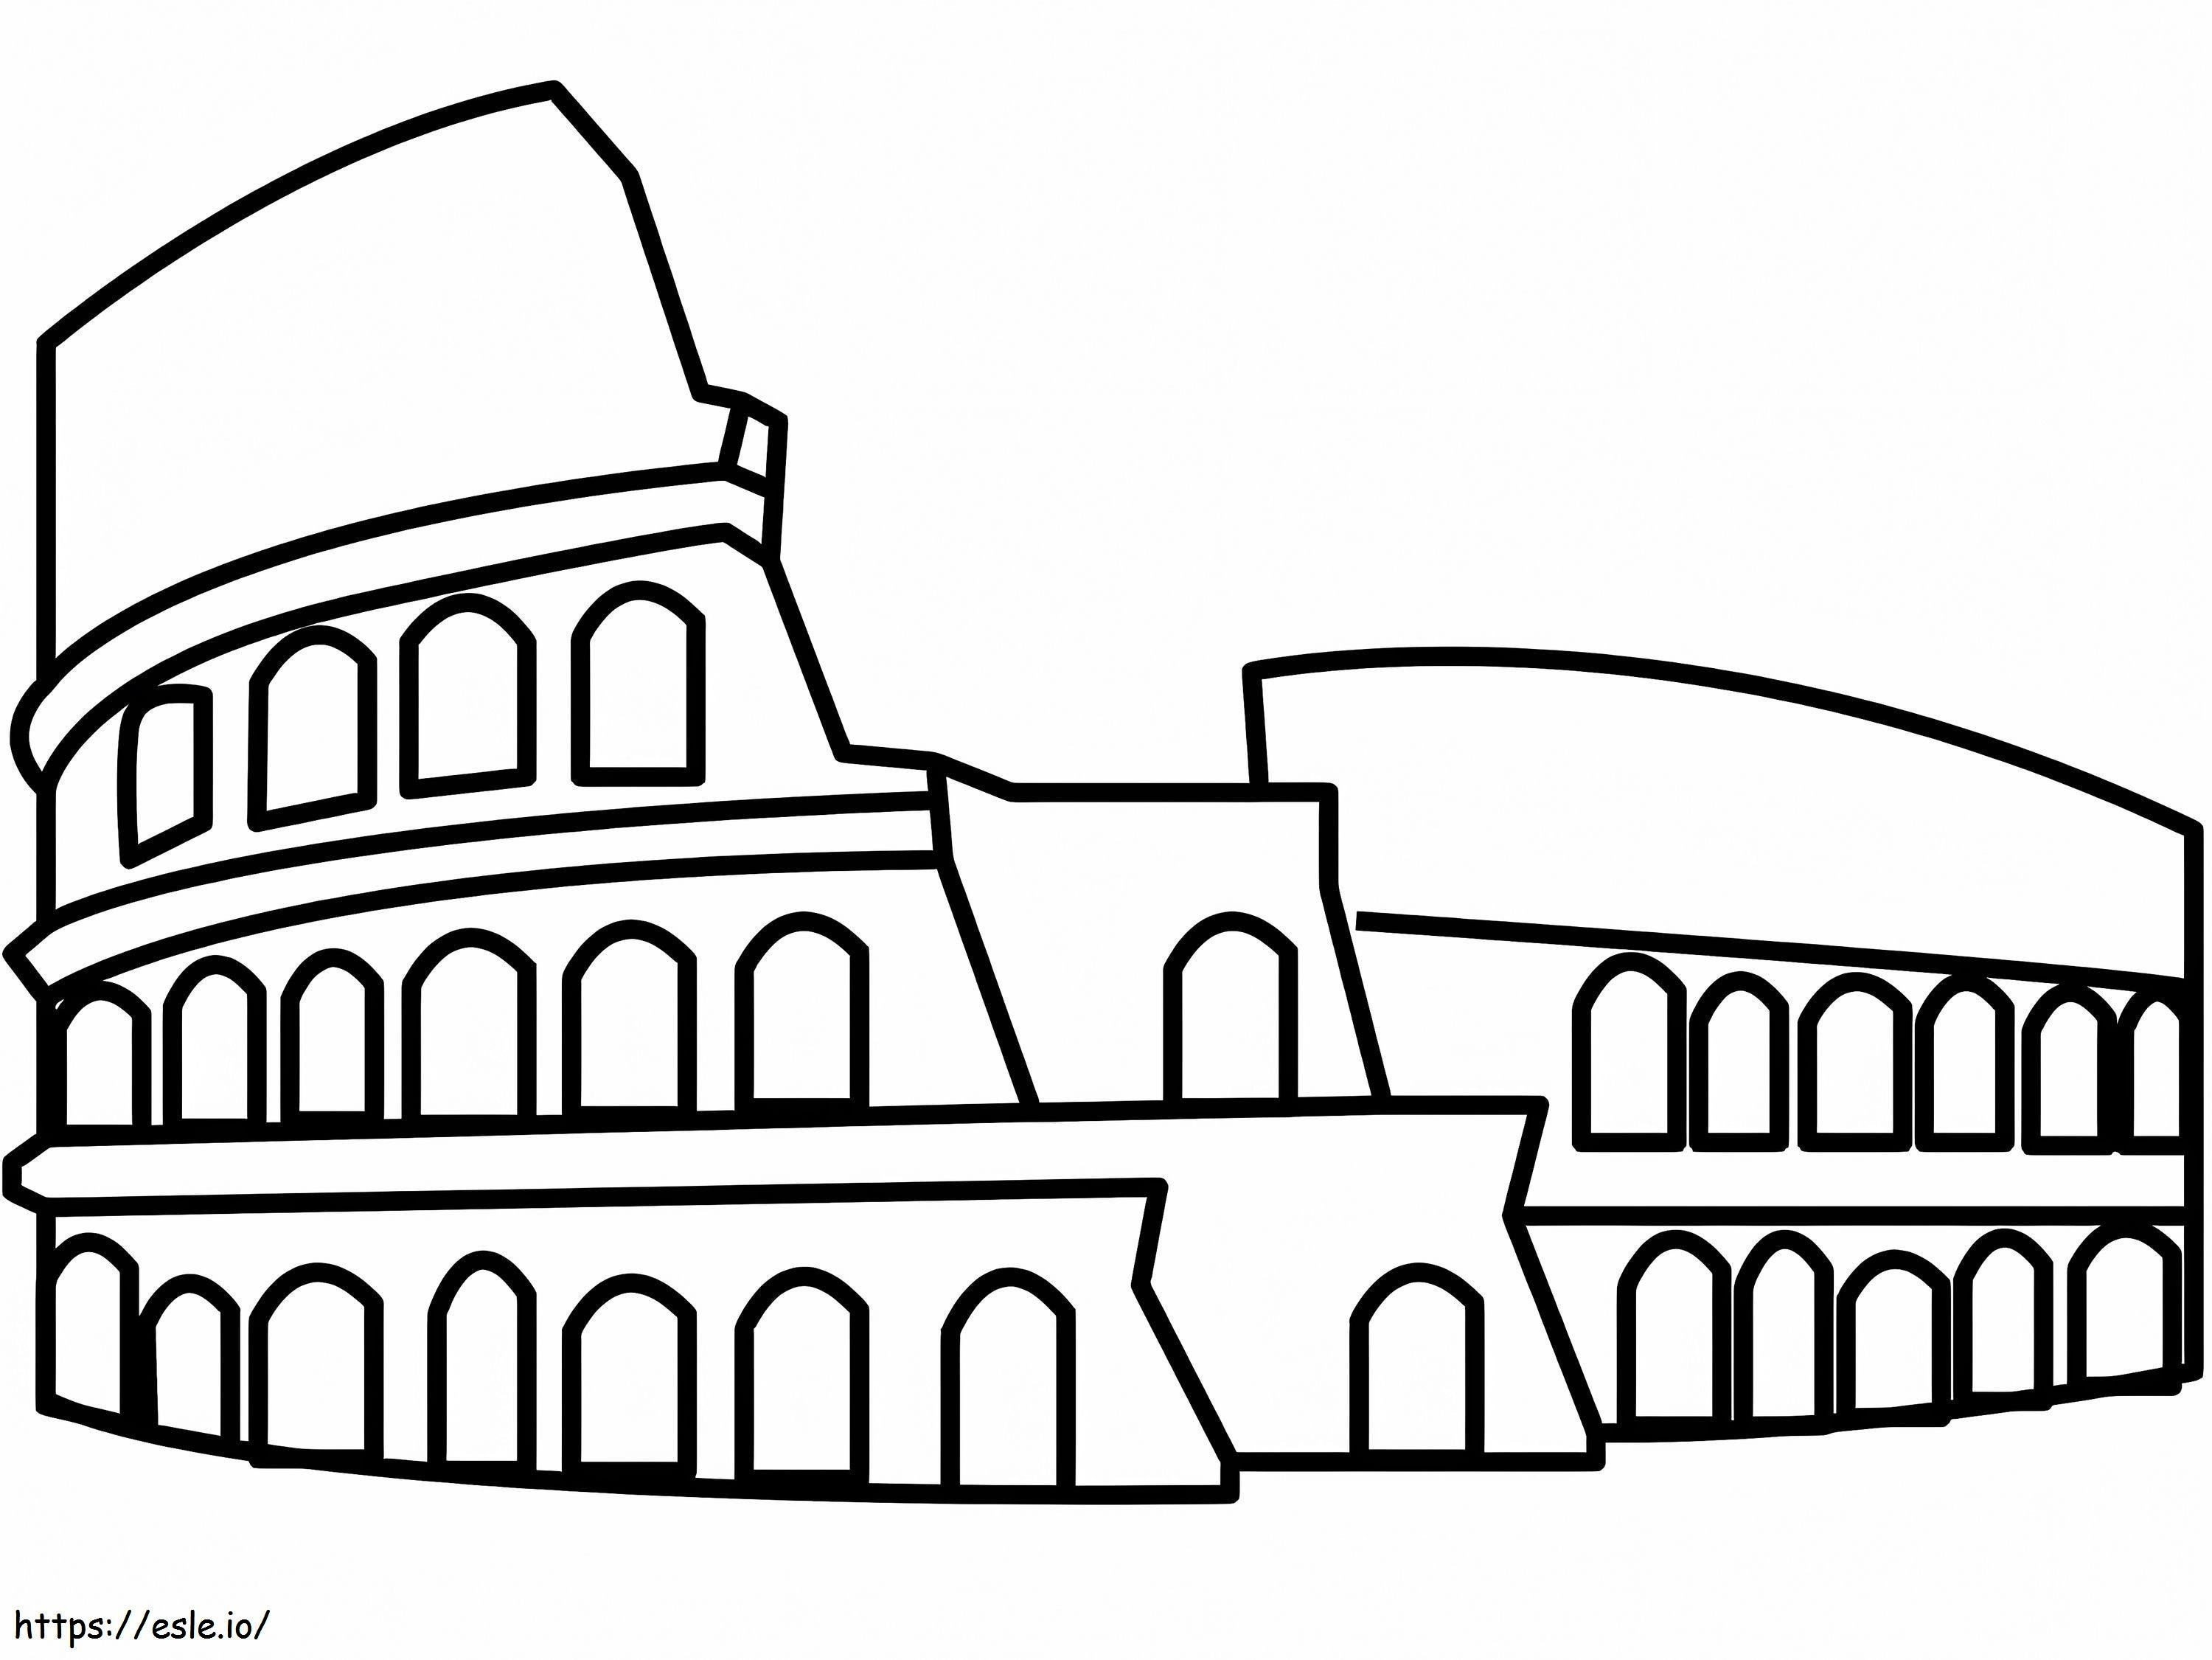 Kolosseum ausmalbilder